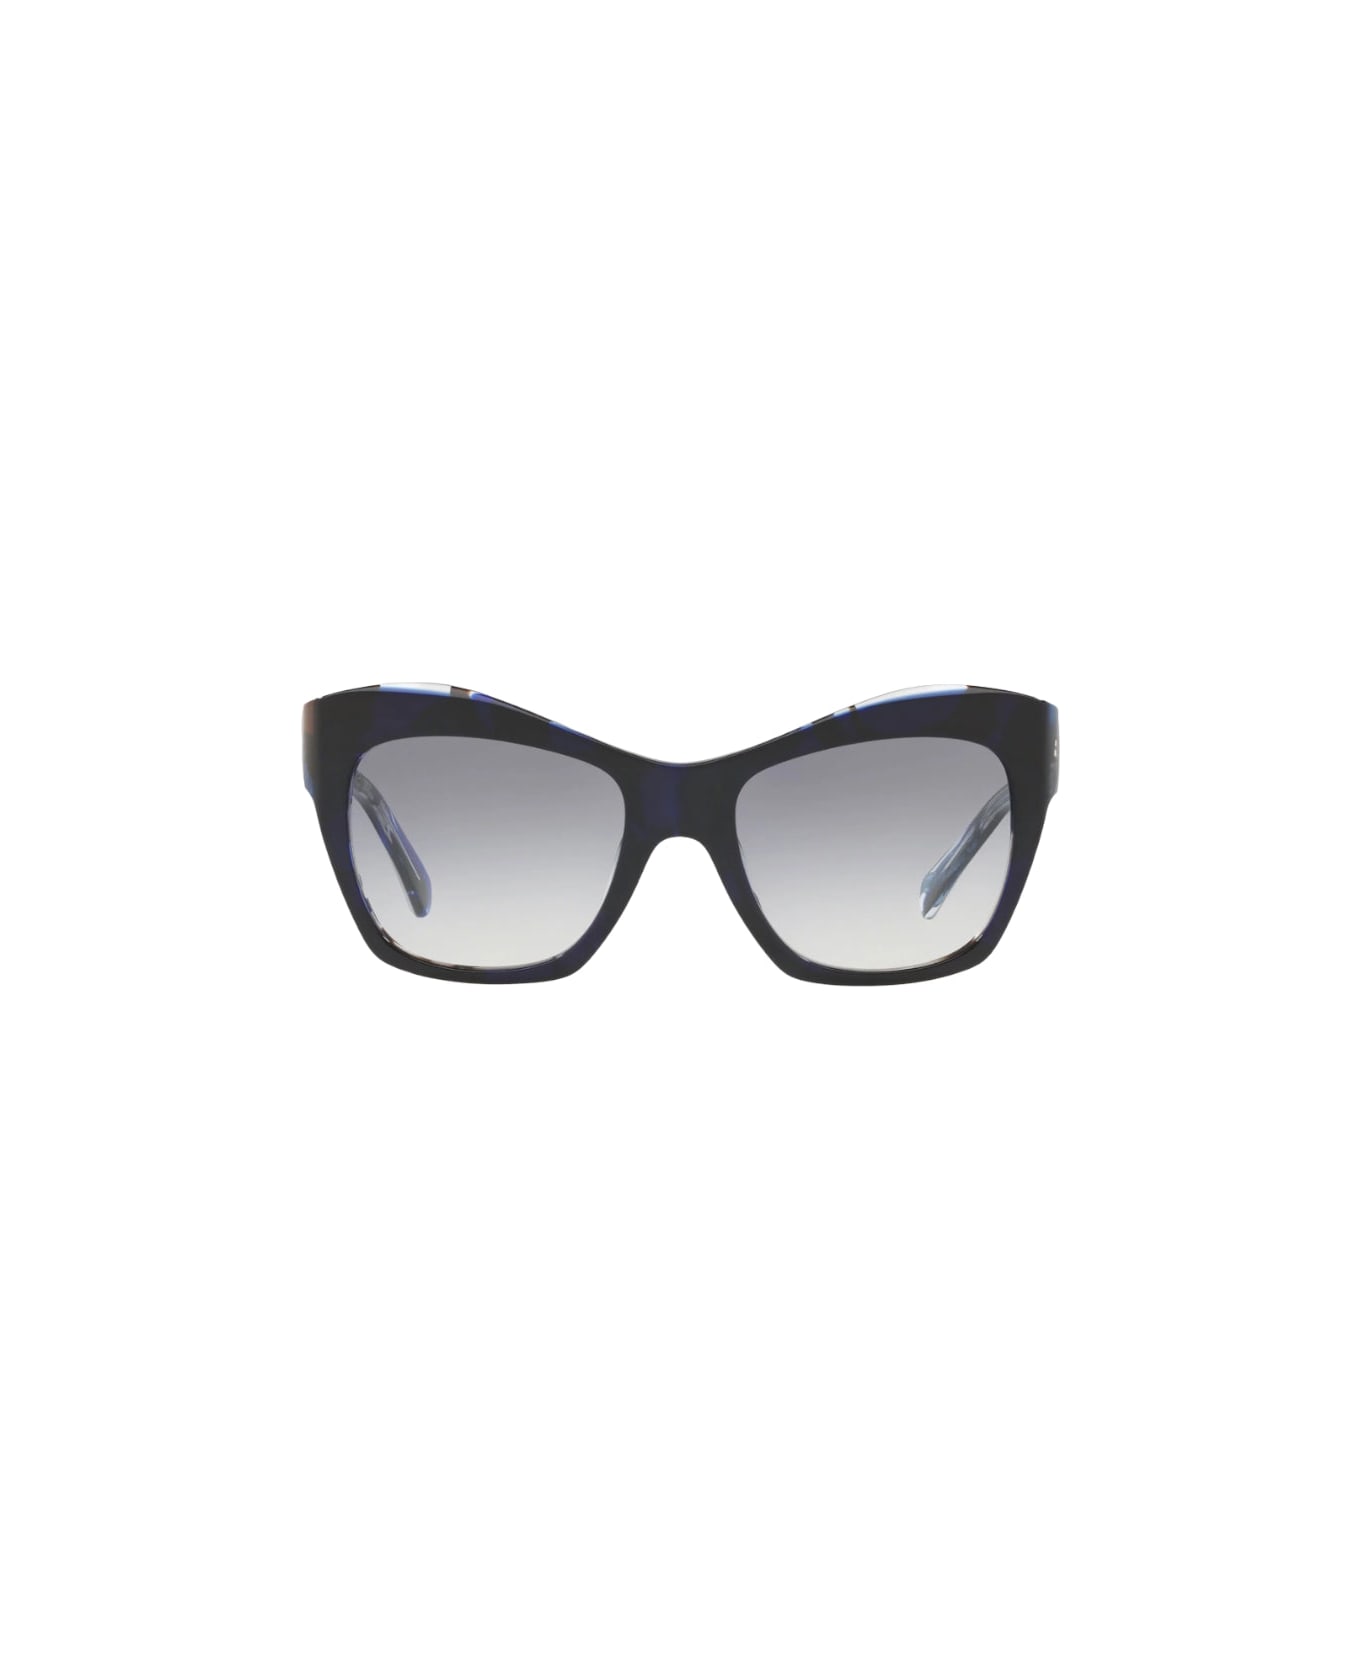 Alain Mikli Nuages - 5043 - Black / Blu Sunglasses サングラス